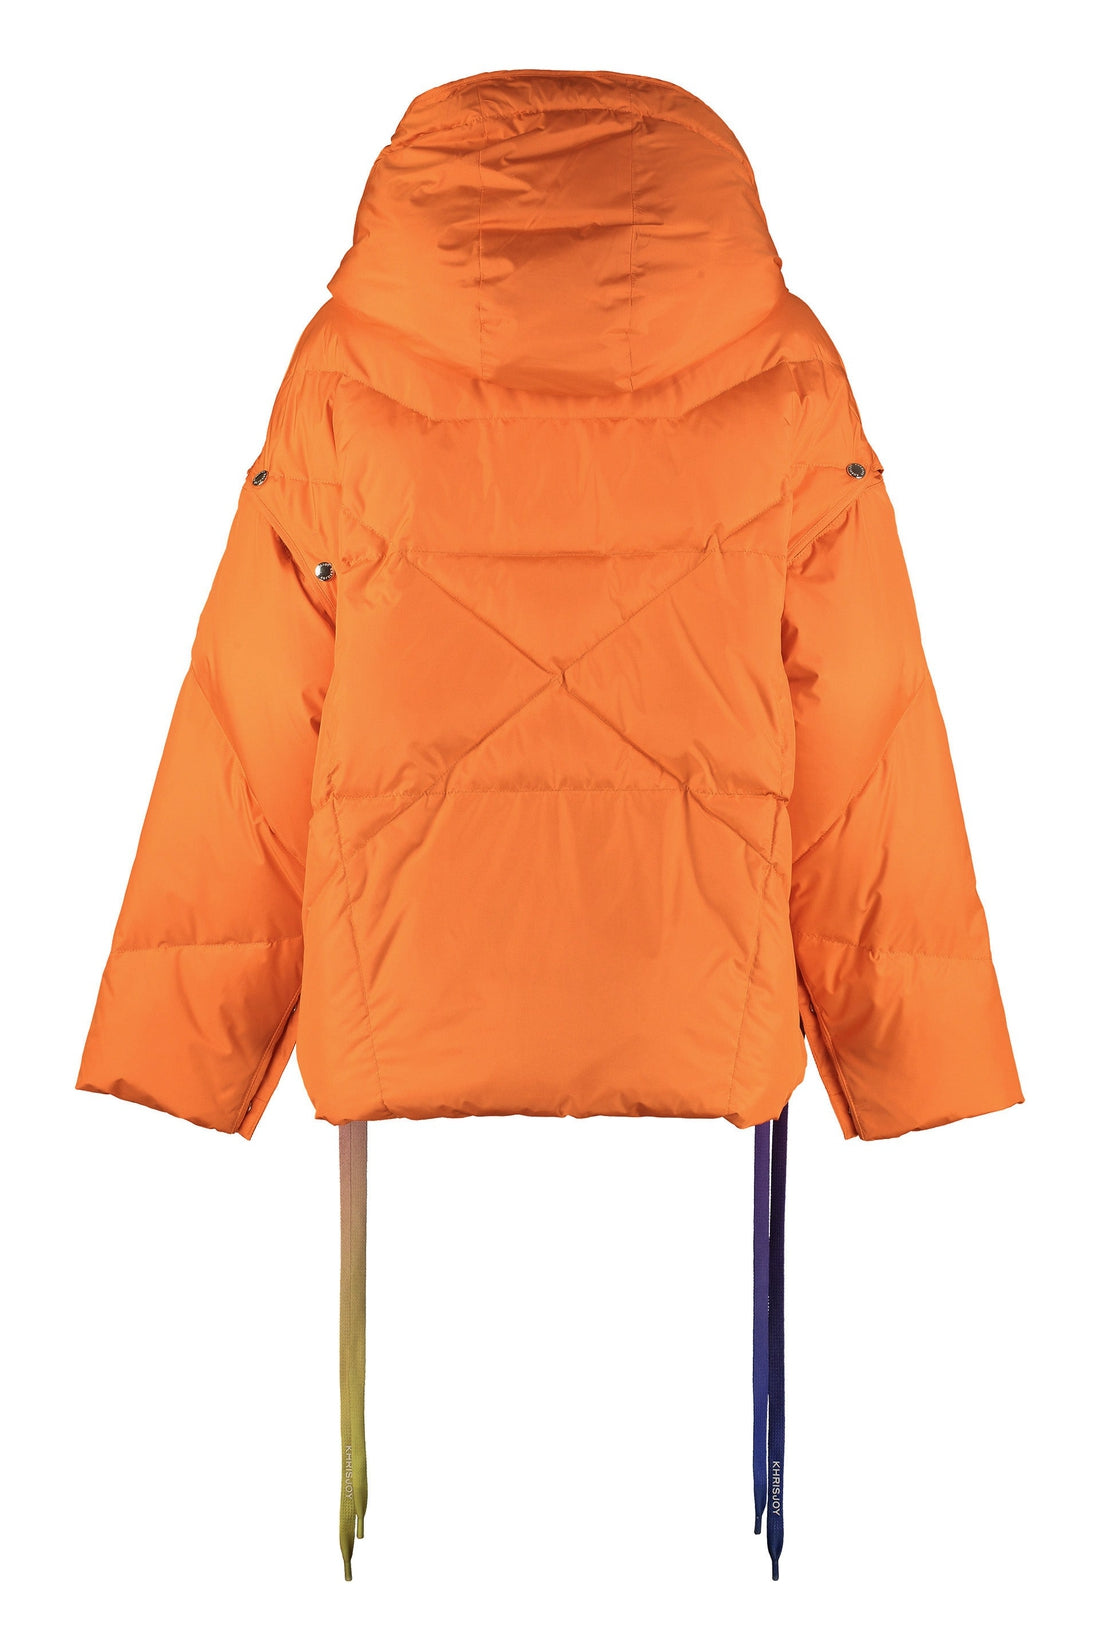 Khrisjoy-OUTLET-SALE-Khris hooded oversize down jacket-ARCHIVIST